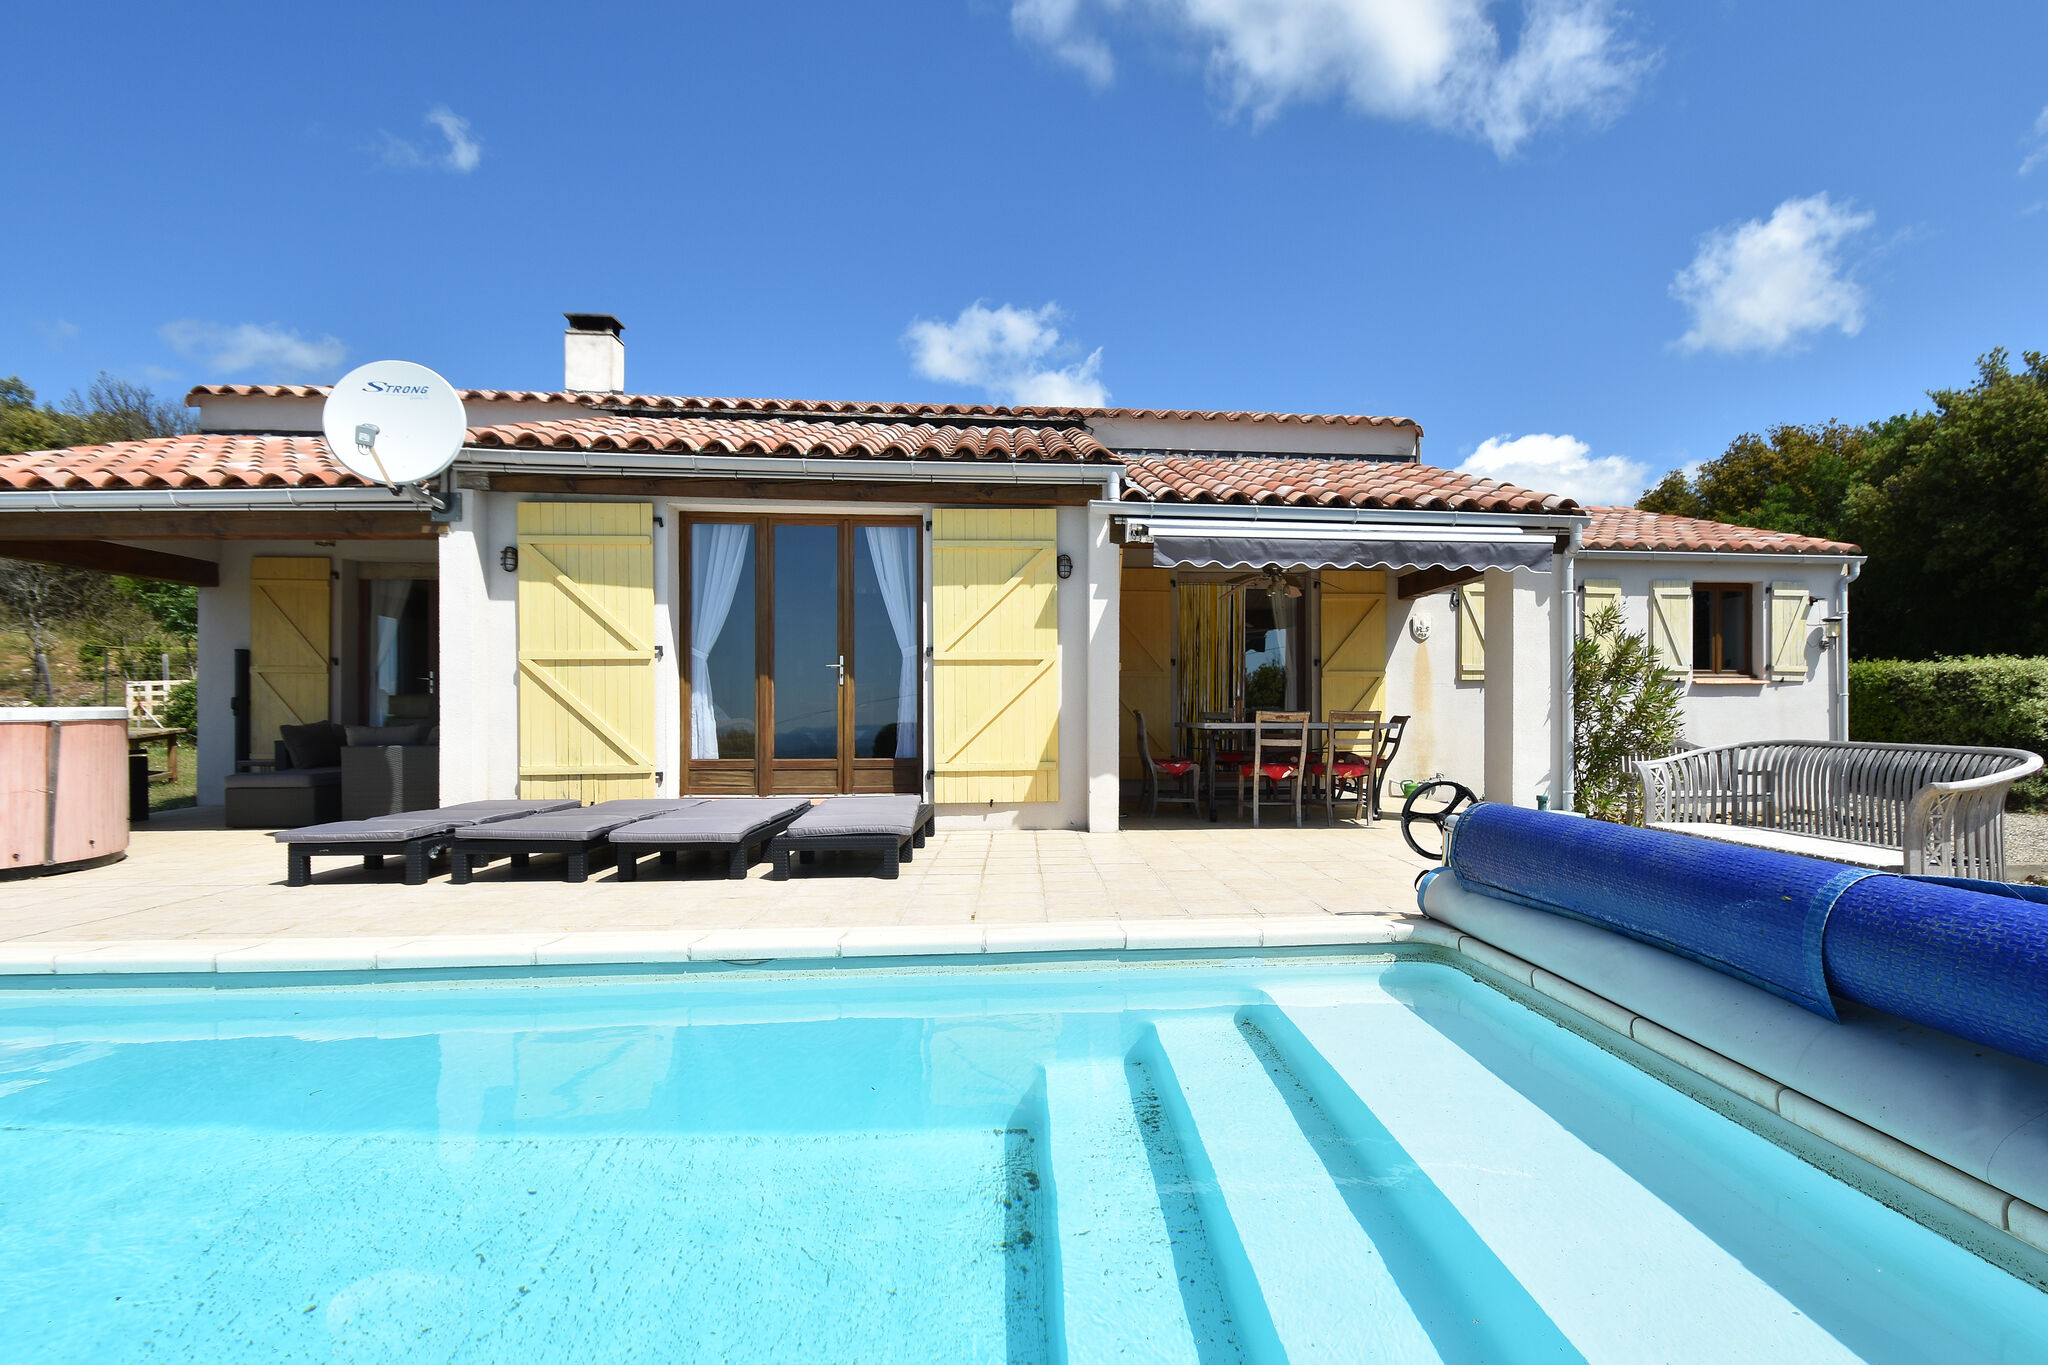 Villa avec piscine chauffée, jacuzzi et vue imprenable